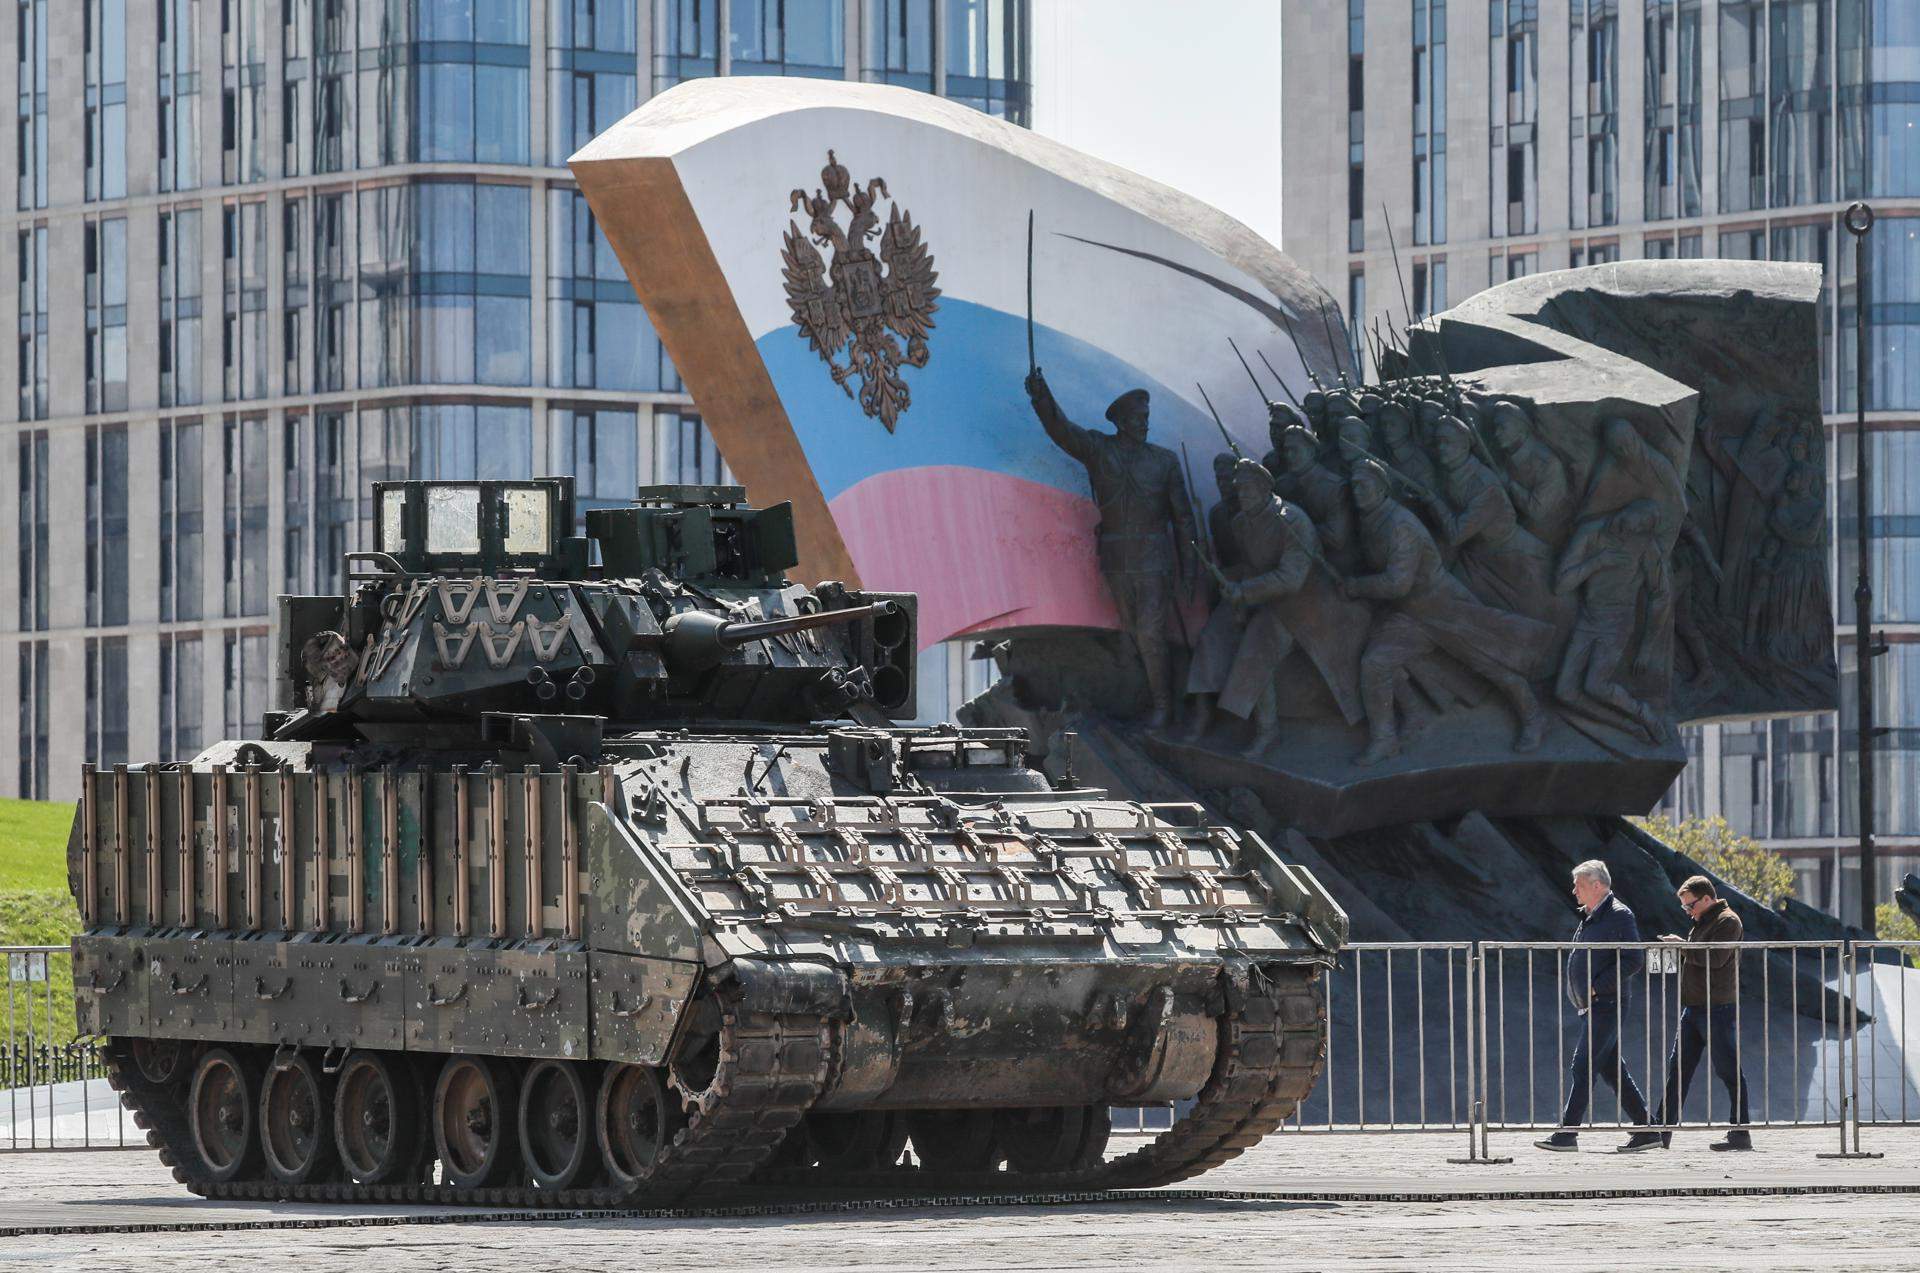 tancs militars russia efe